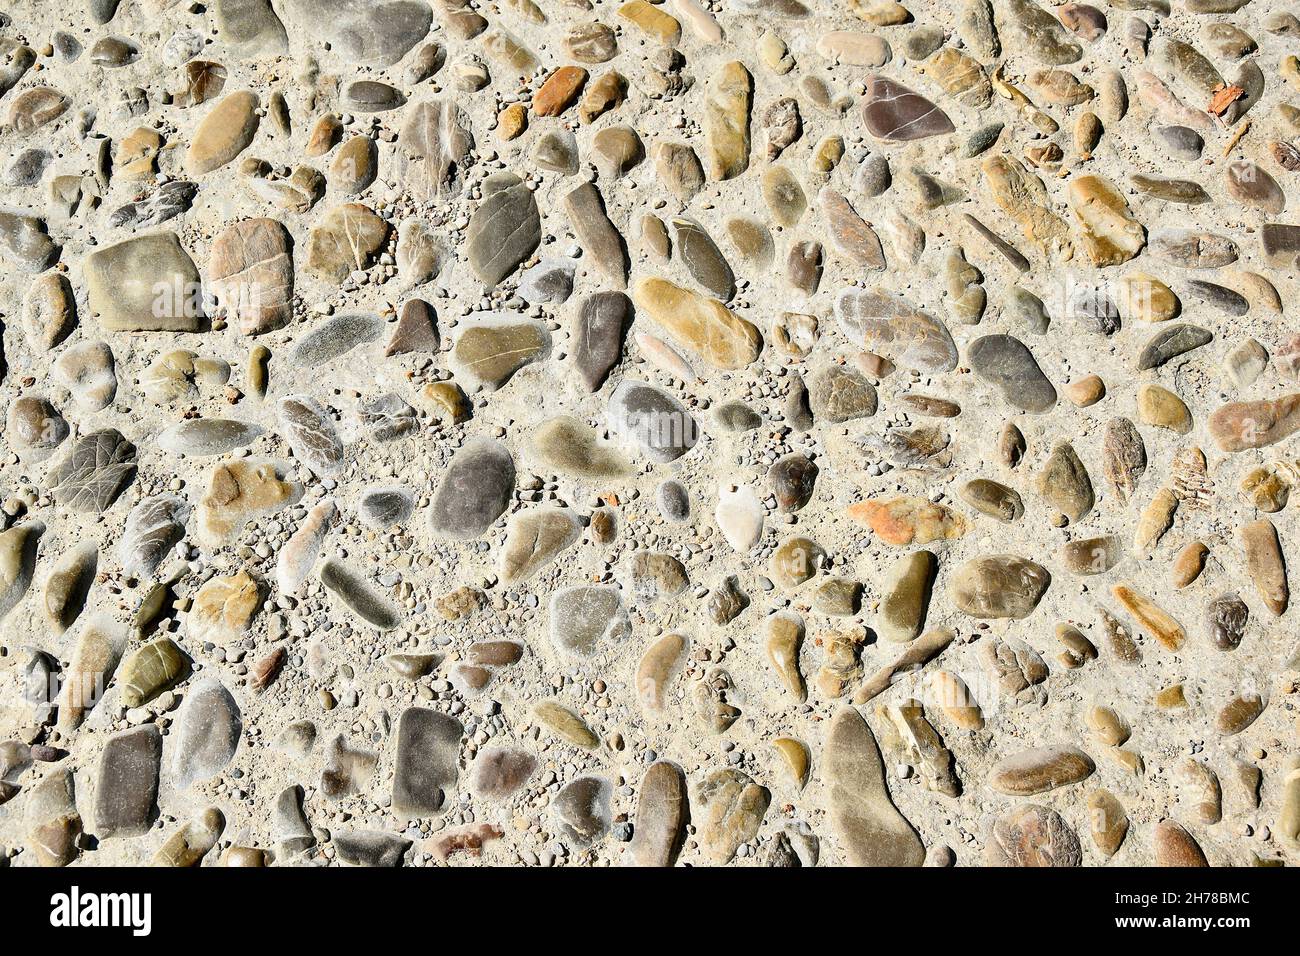 Kieselsteine unterschiedlicher Größe und Farbe als freundlicher und unverwechselbarer Bodenbelag nach altem Muster Stock Photo